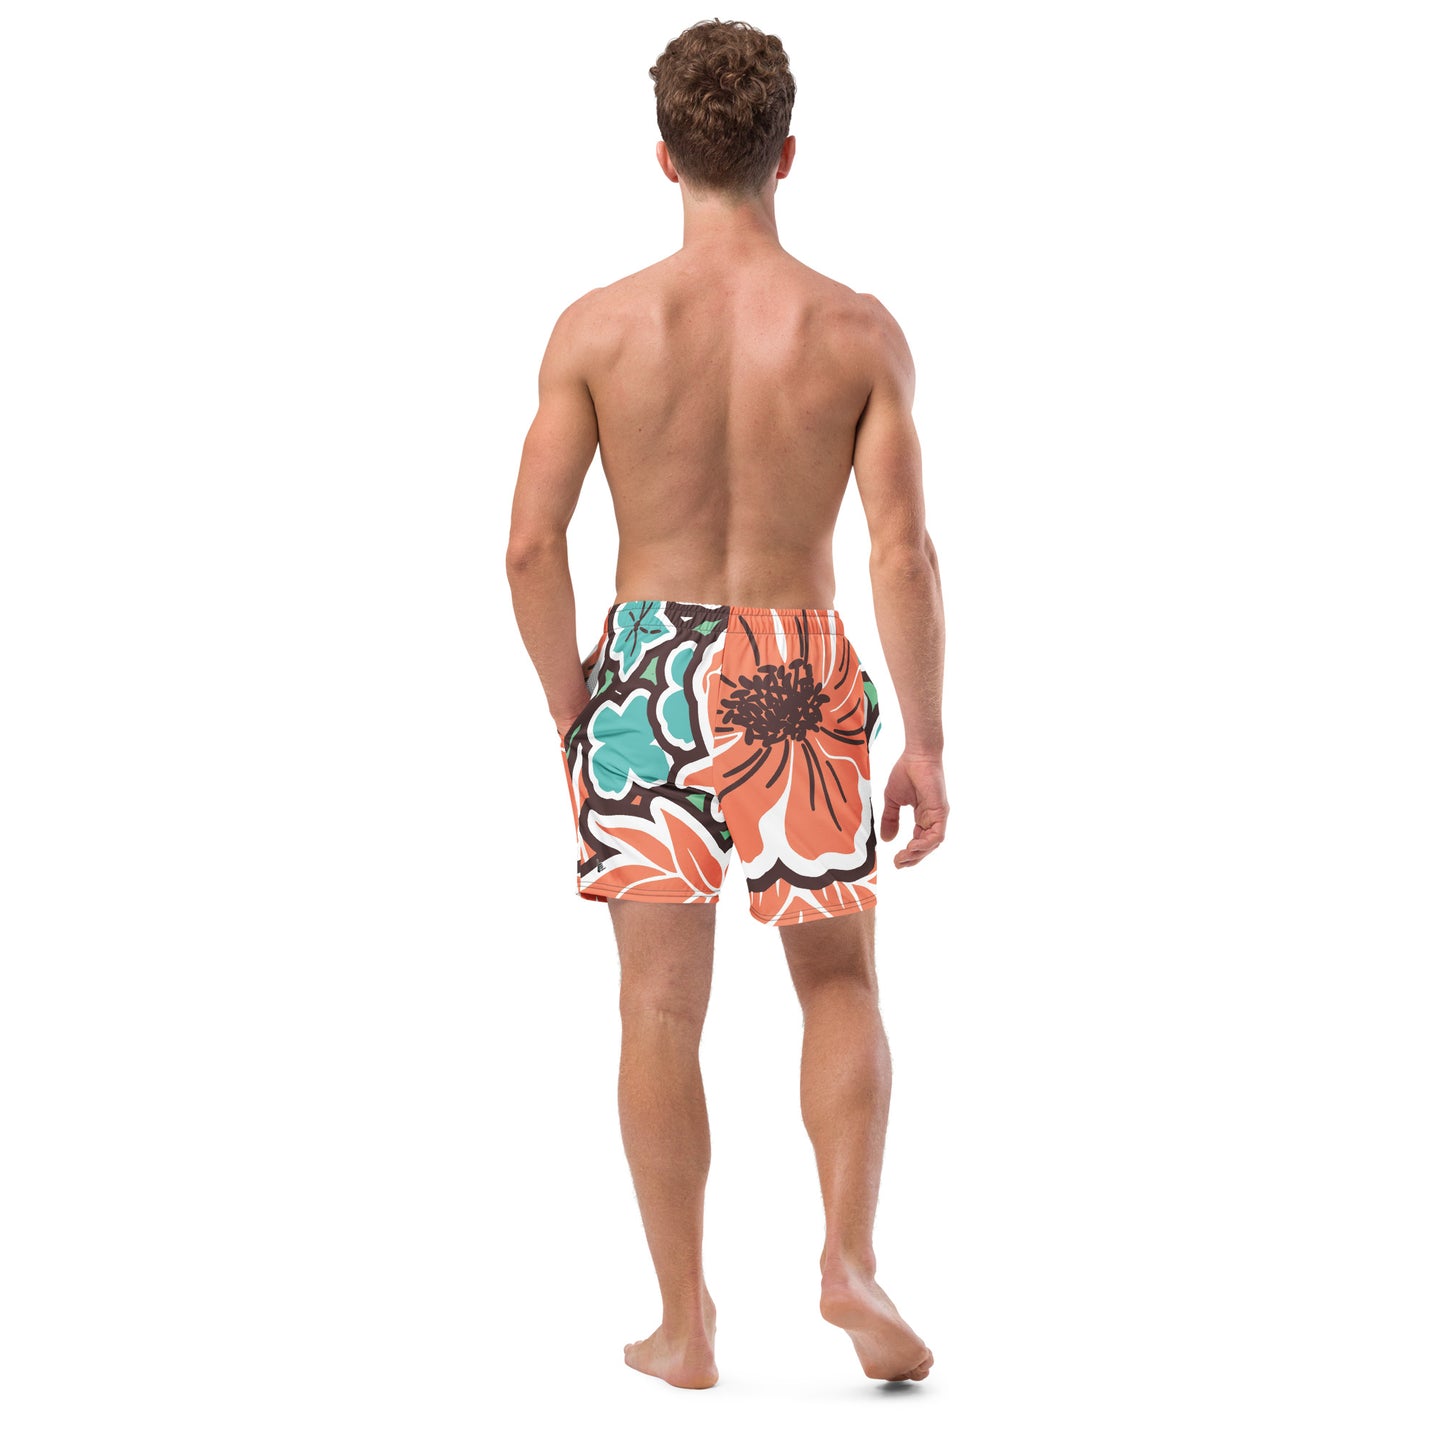 Men's Tropical swim trunks